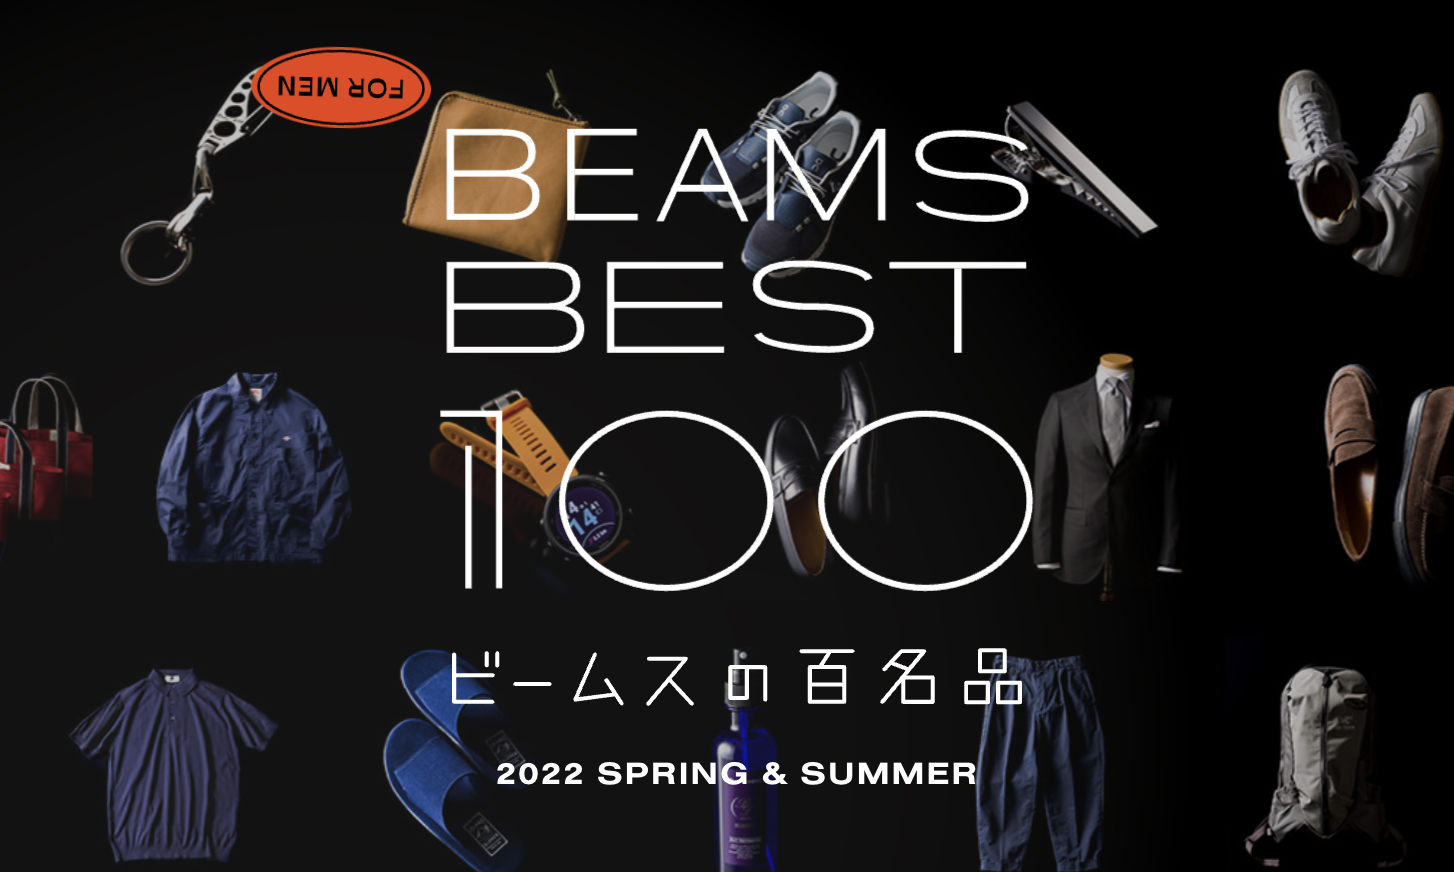 BEAMS 推出百件好物合集「BEAMS BEST 100」